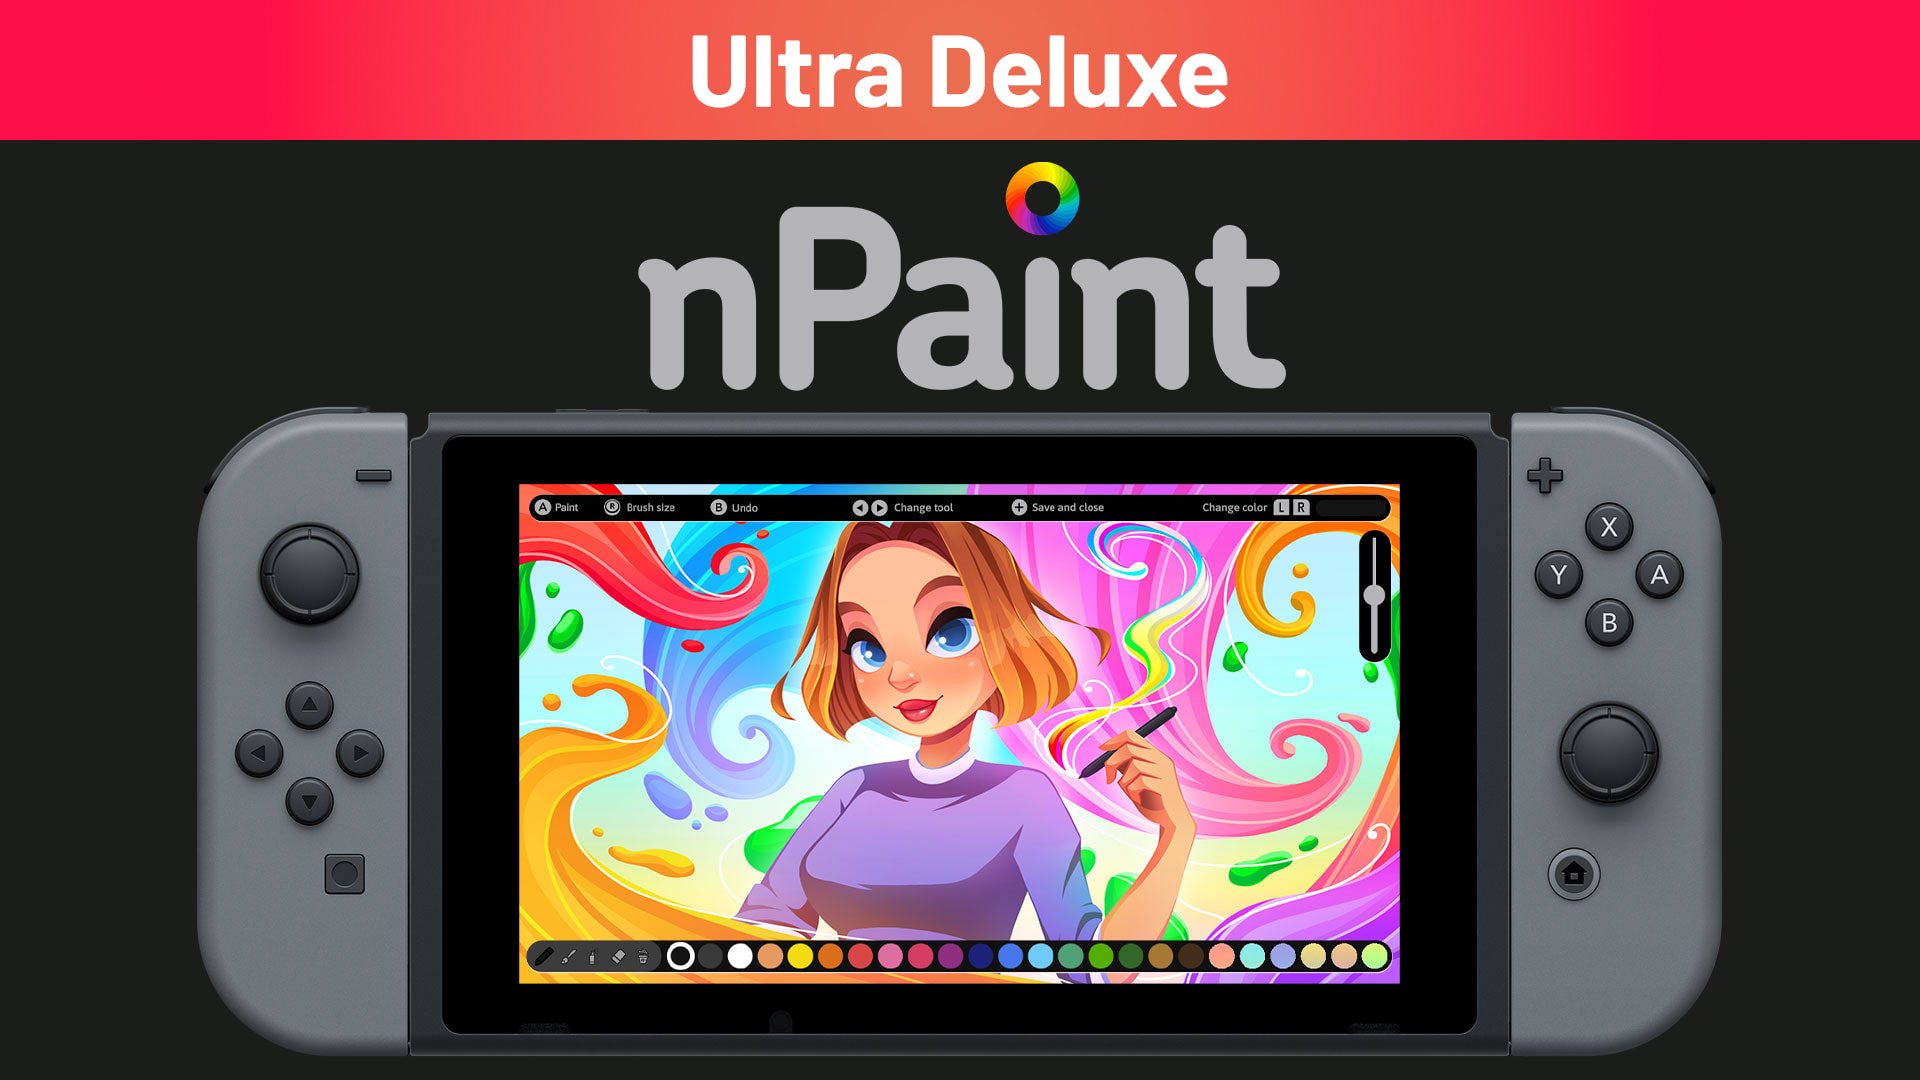 nPaint Ultra Deluxe